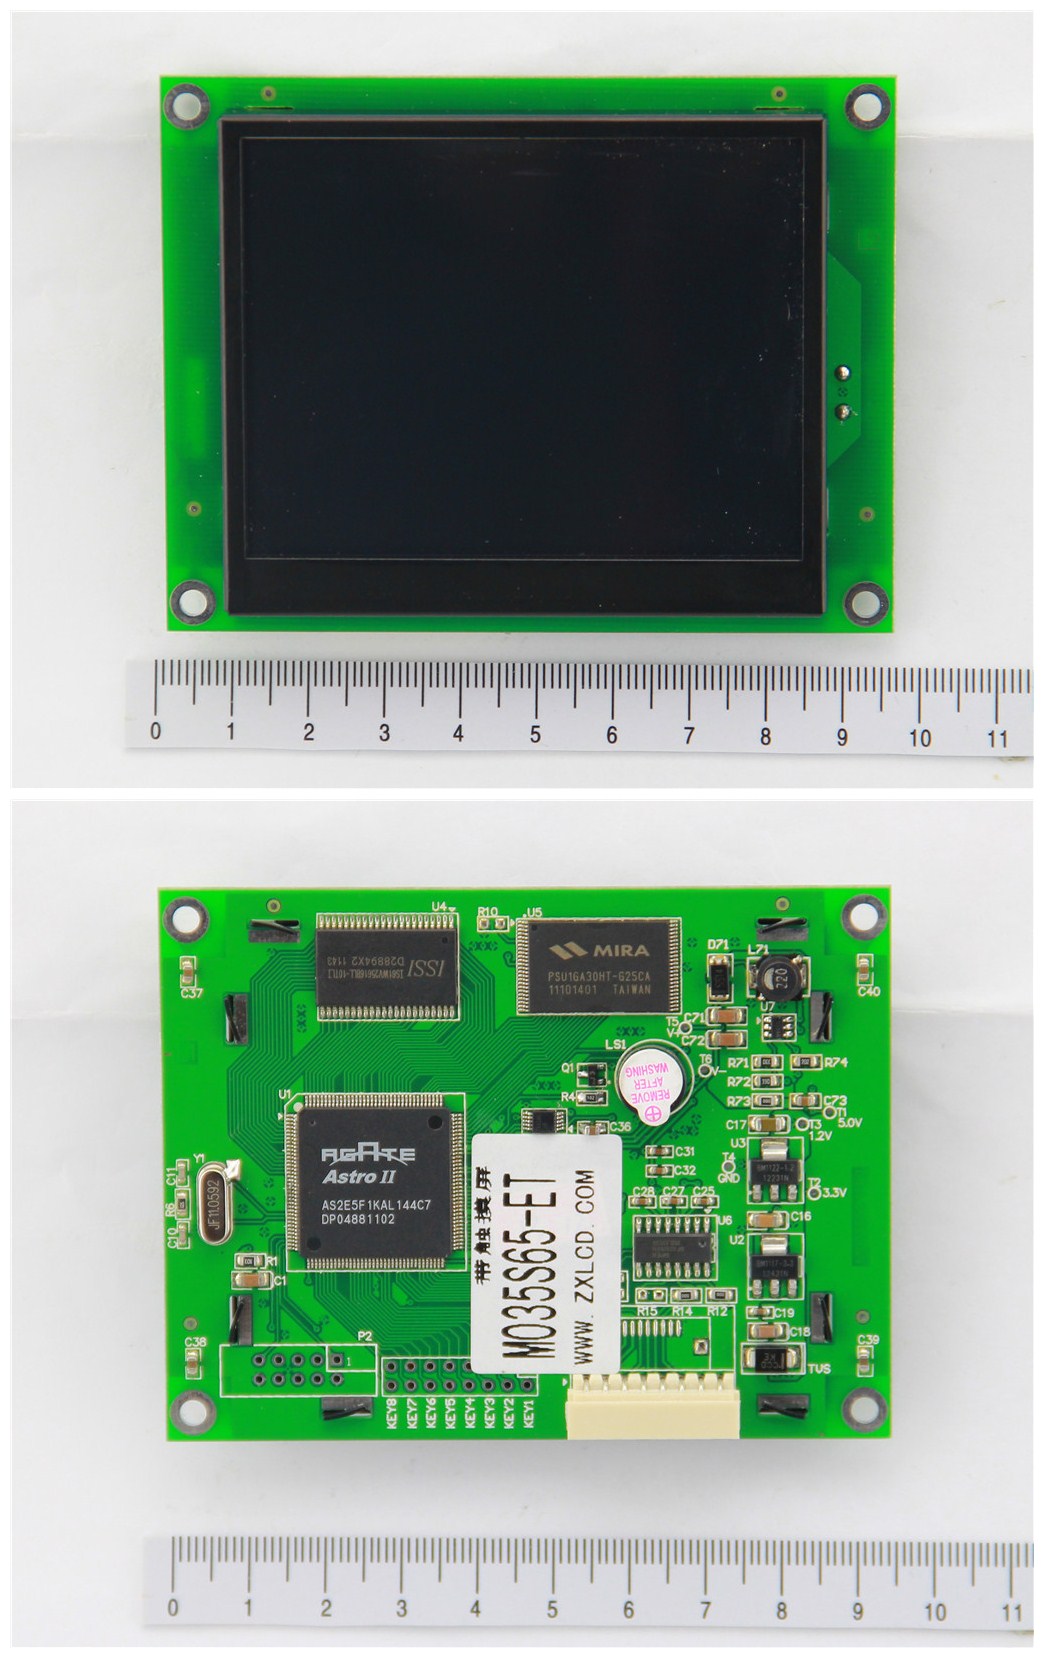 中显液晶LCD,LCM,液晶，液晶显示，液晶模块，12864，240128，320240 